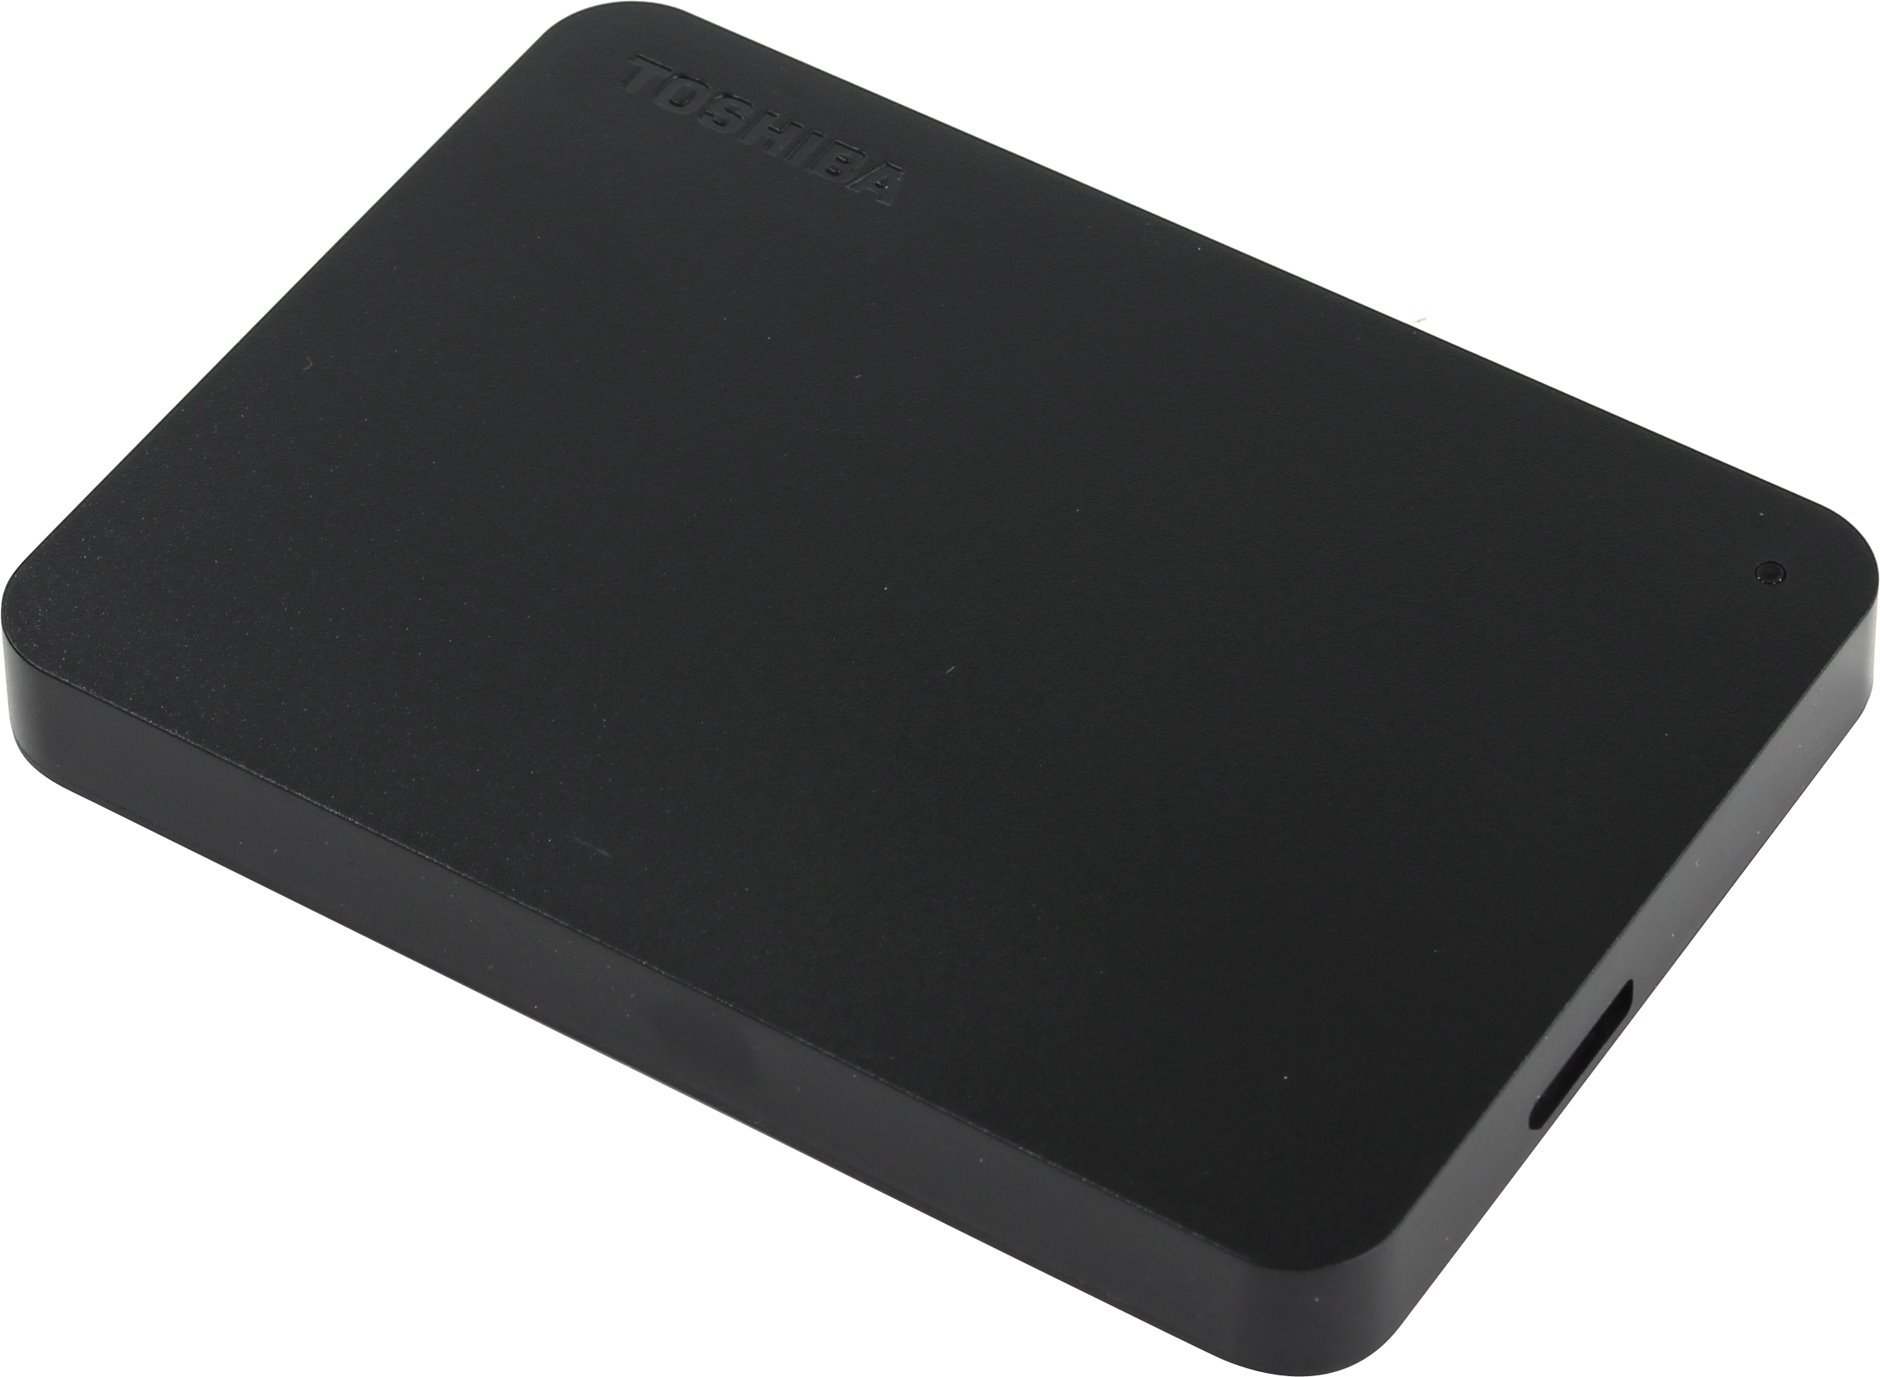 Лучшие внешние жесткие диски HDD - 1 Тб